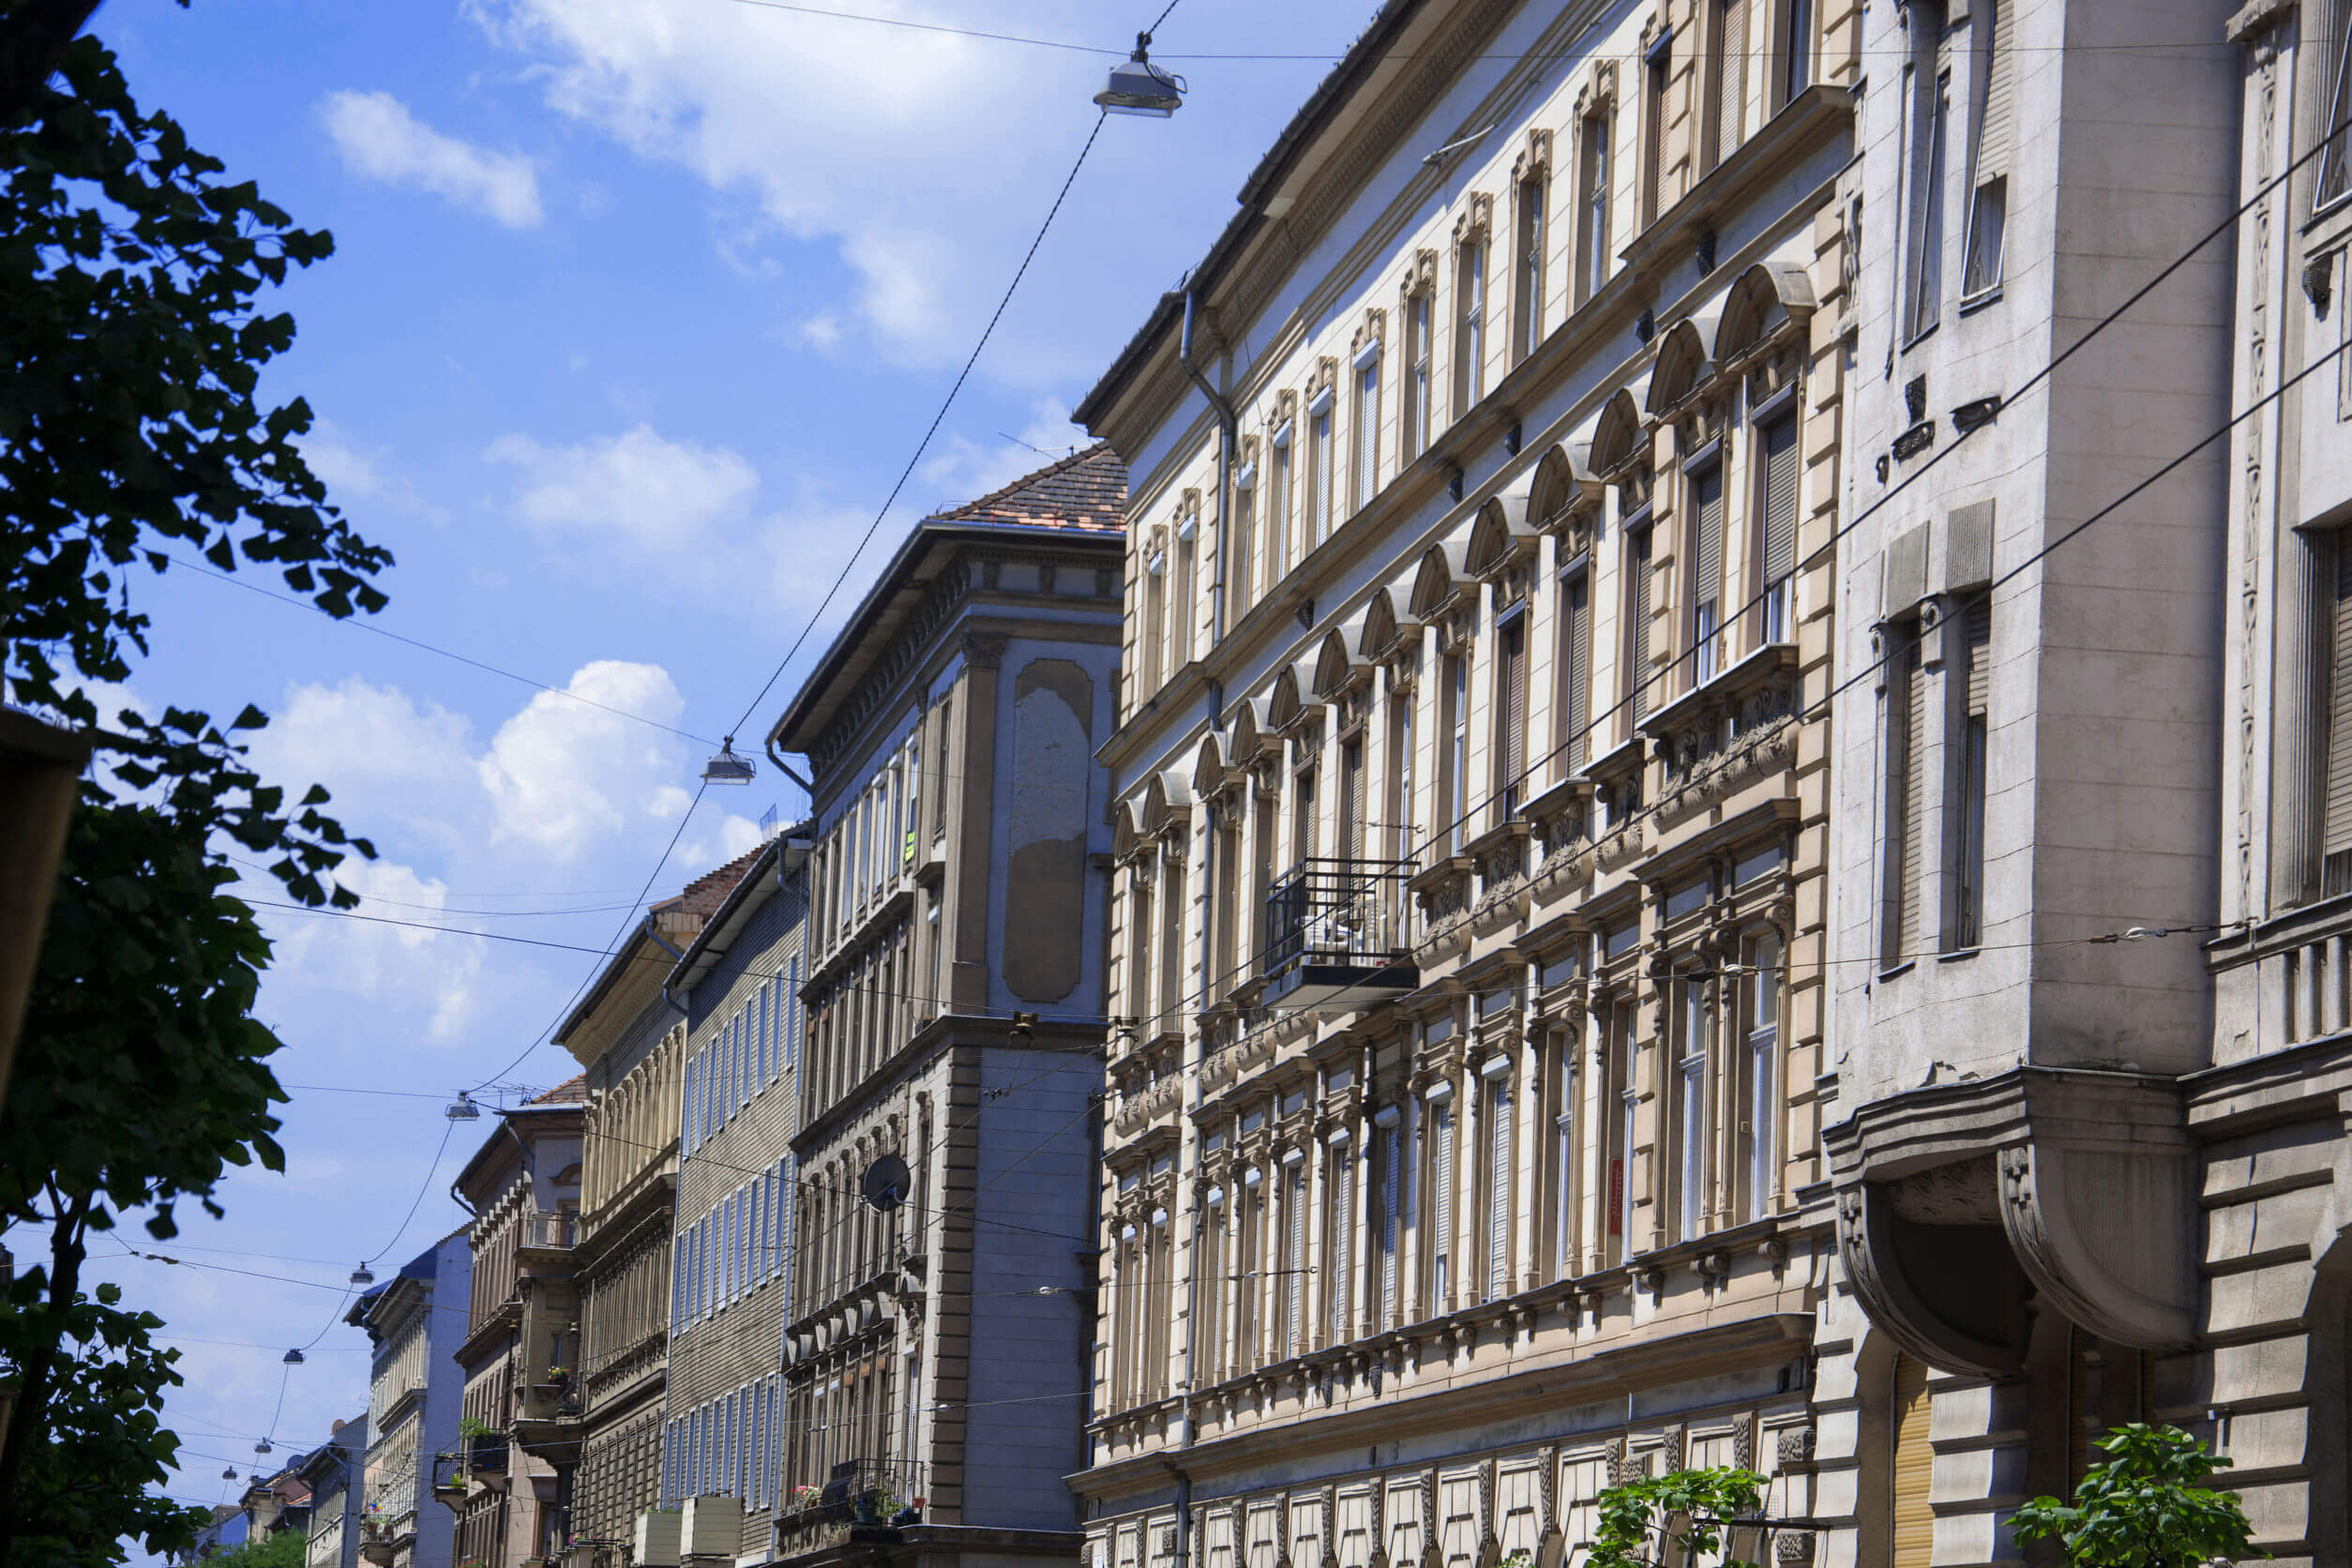 40 millió alatt is vannak szép lakások Ferencvárosban